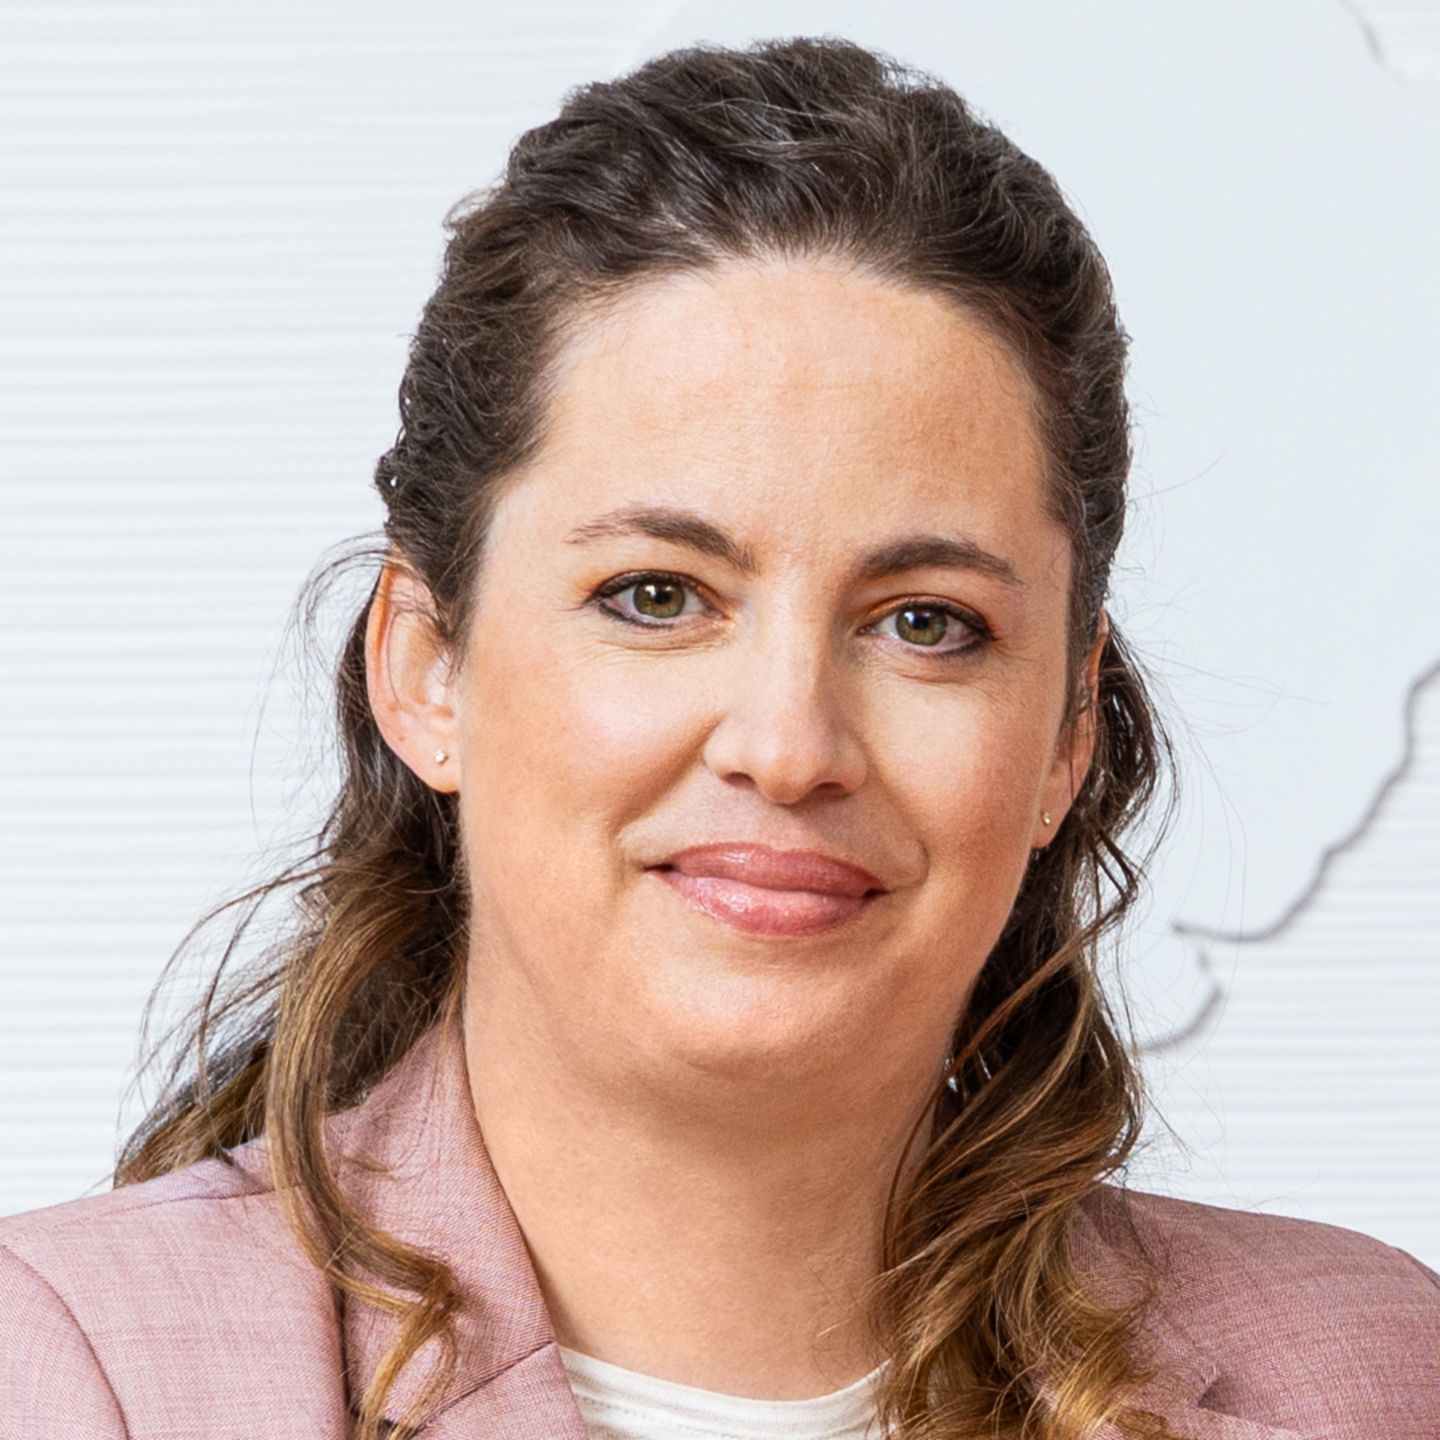 EOS u Globalnom sporazumu UN-a: Sibylle Weingart, voditeljica korporativne usklađenosti u Grupi EOS